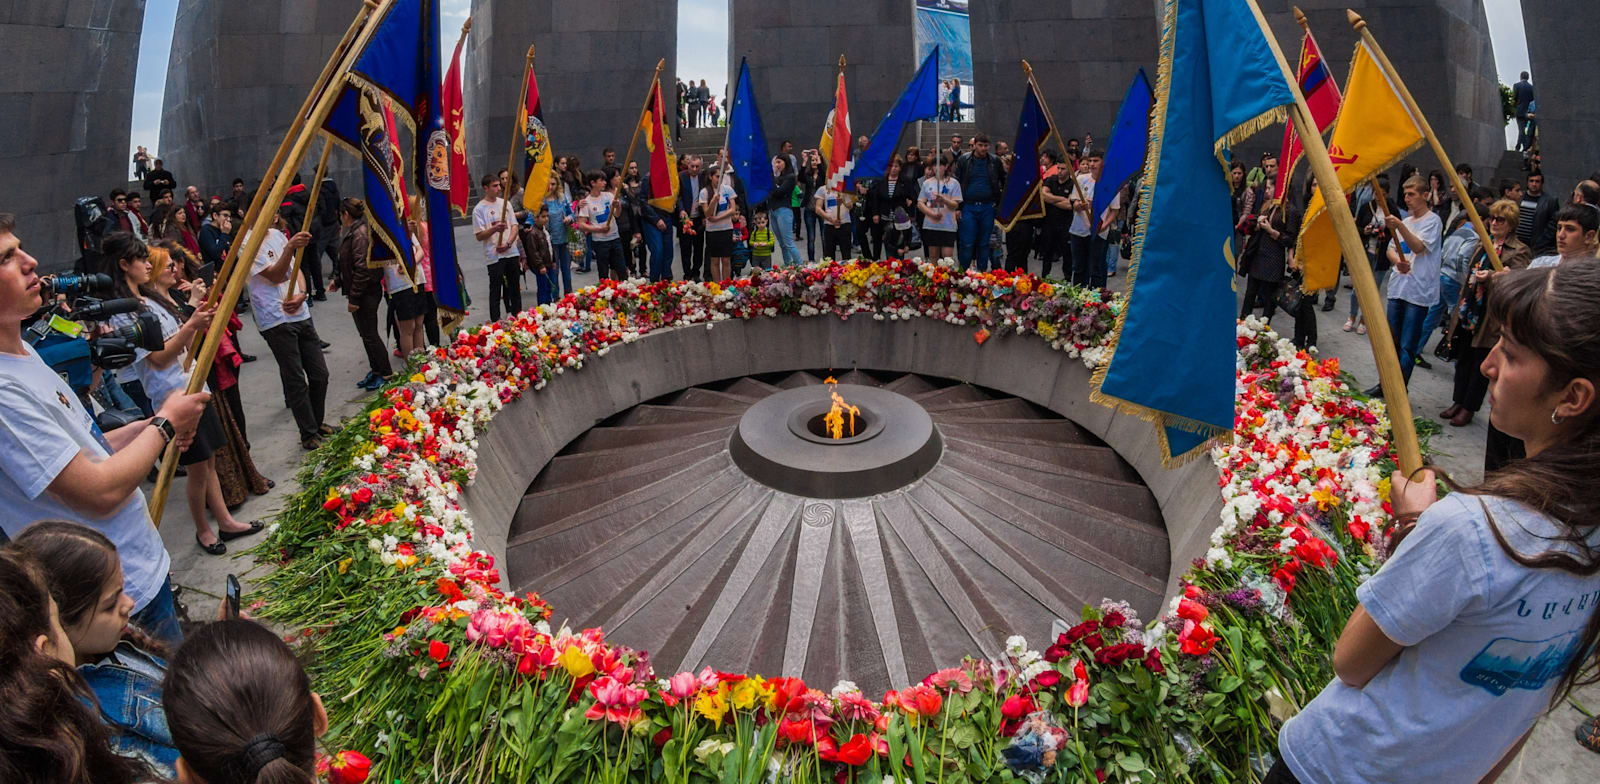 האנדרטה לזכר רצח העם הארמני בבירה ירוואן. 1.5 מיליון קורבנות / צילום: Shutterstock